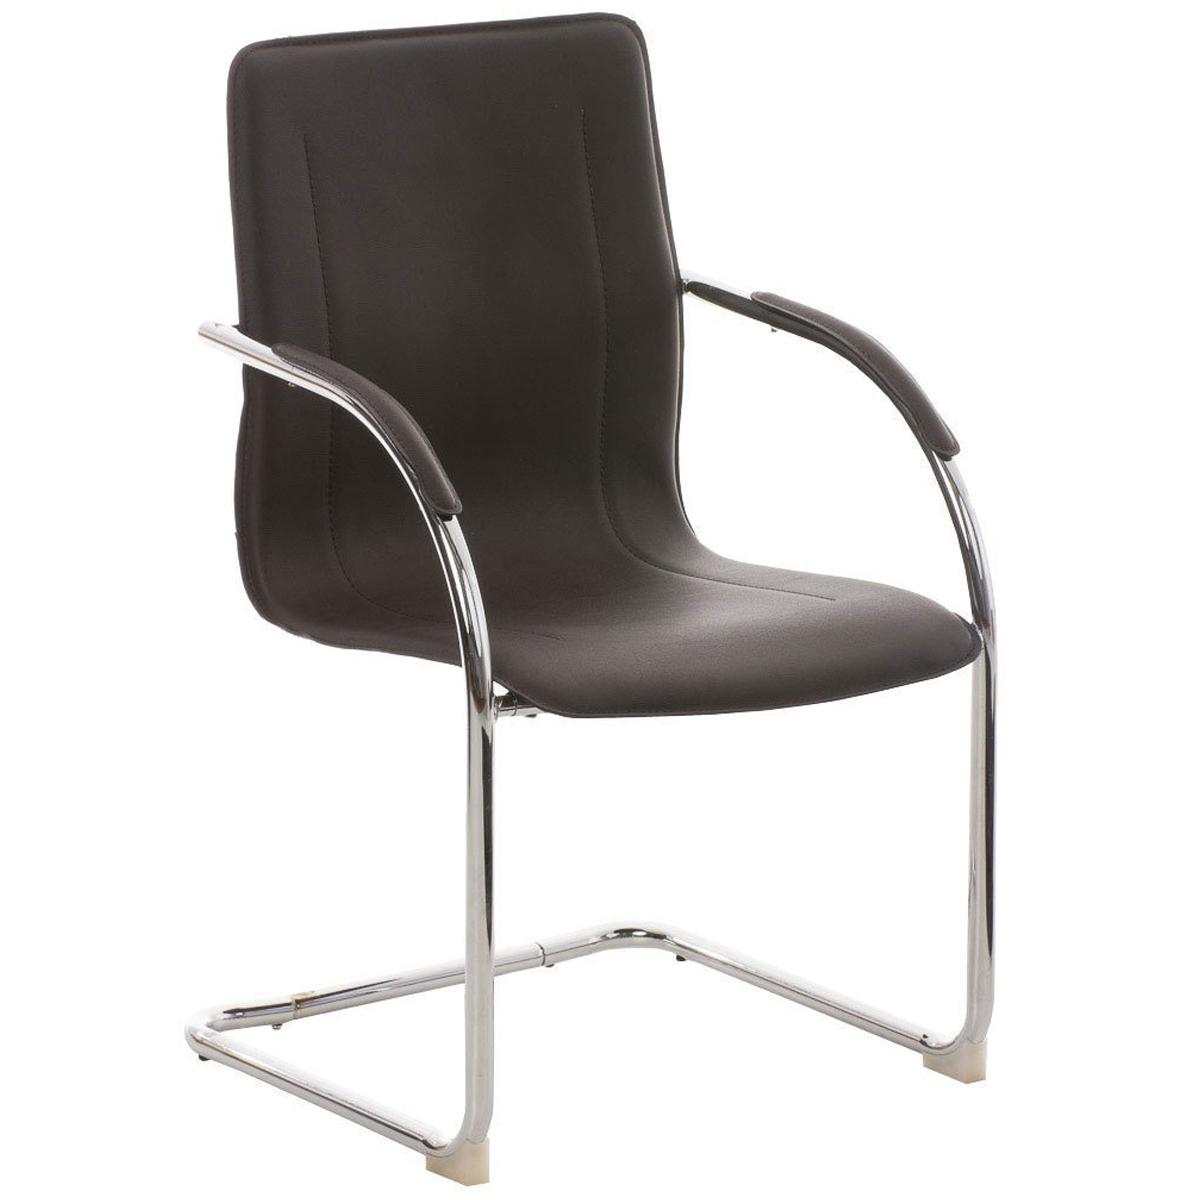 Cadeira de Visita FLAP, Estrutura Metálica, Design Moderno, Em Pele, Cor Castanho